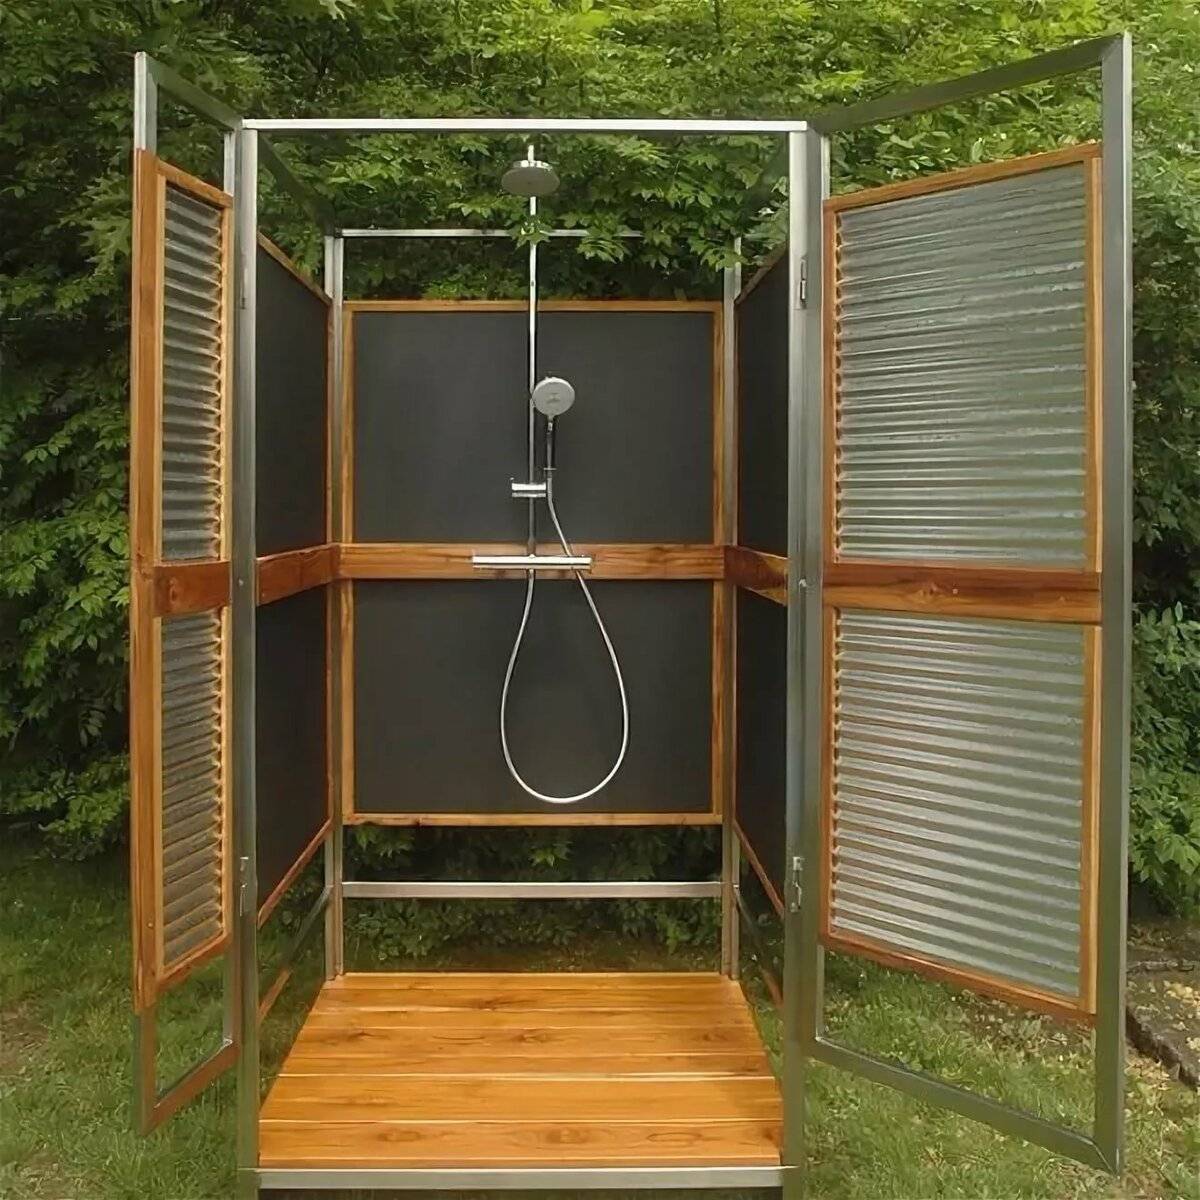 Как оборудовать летний душ на даче своими руками фото